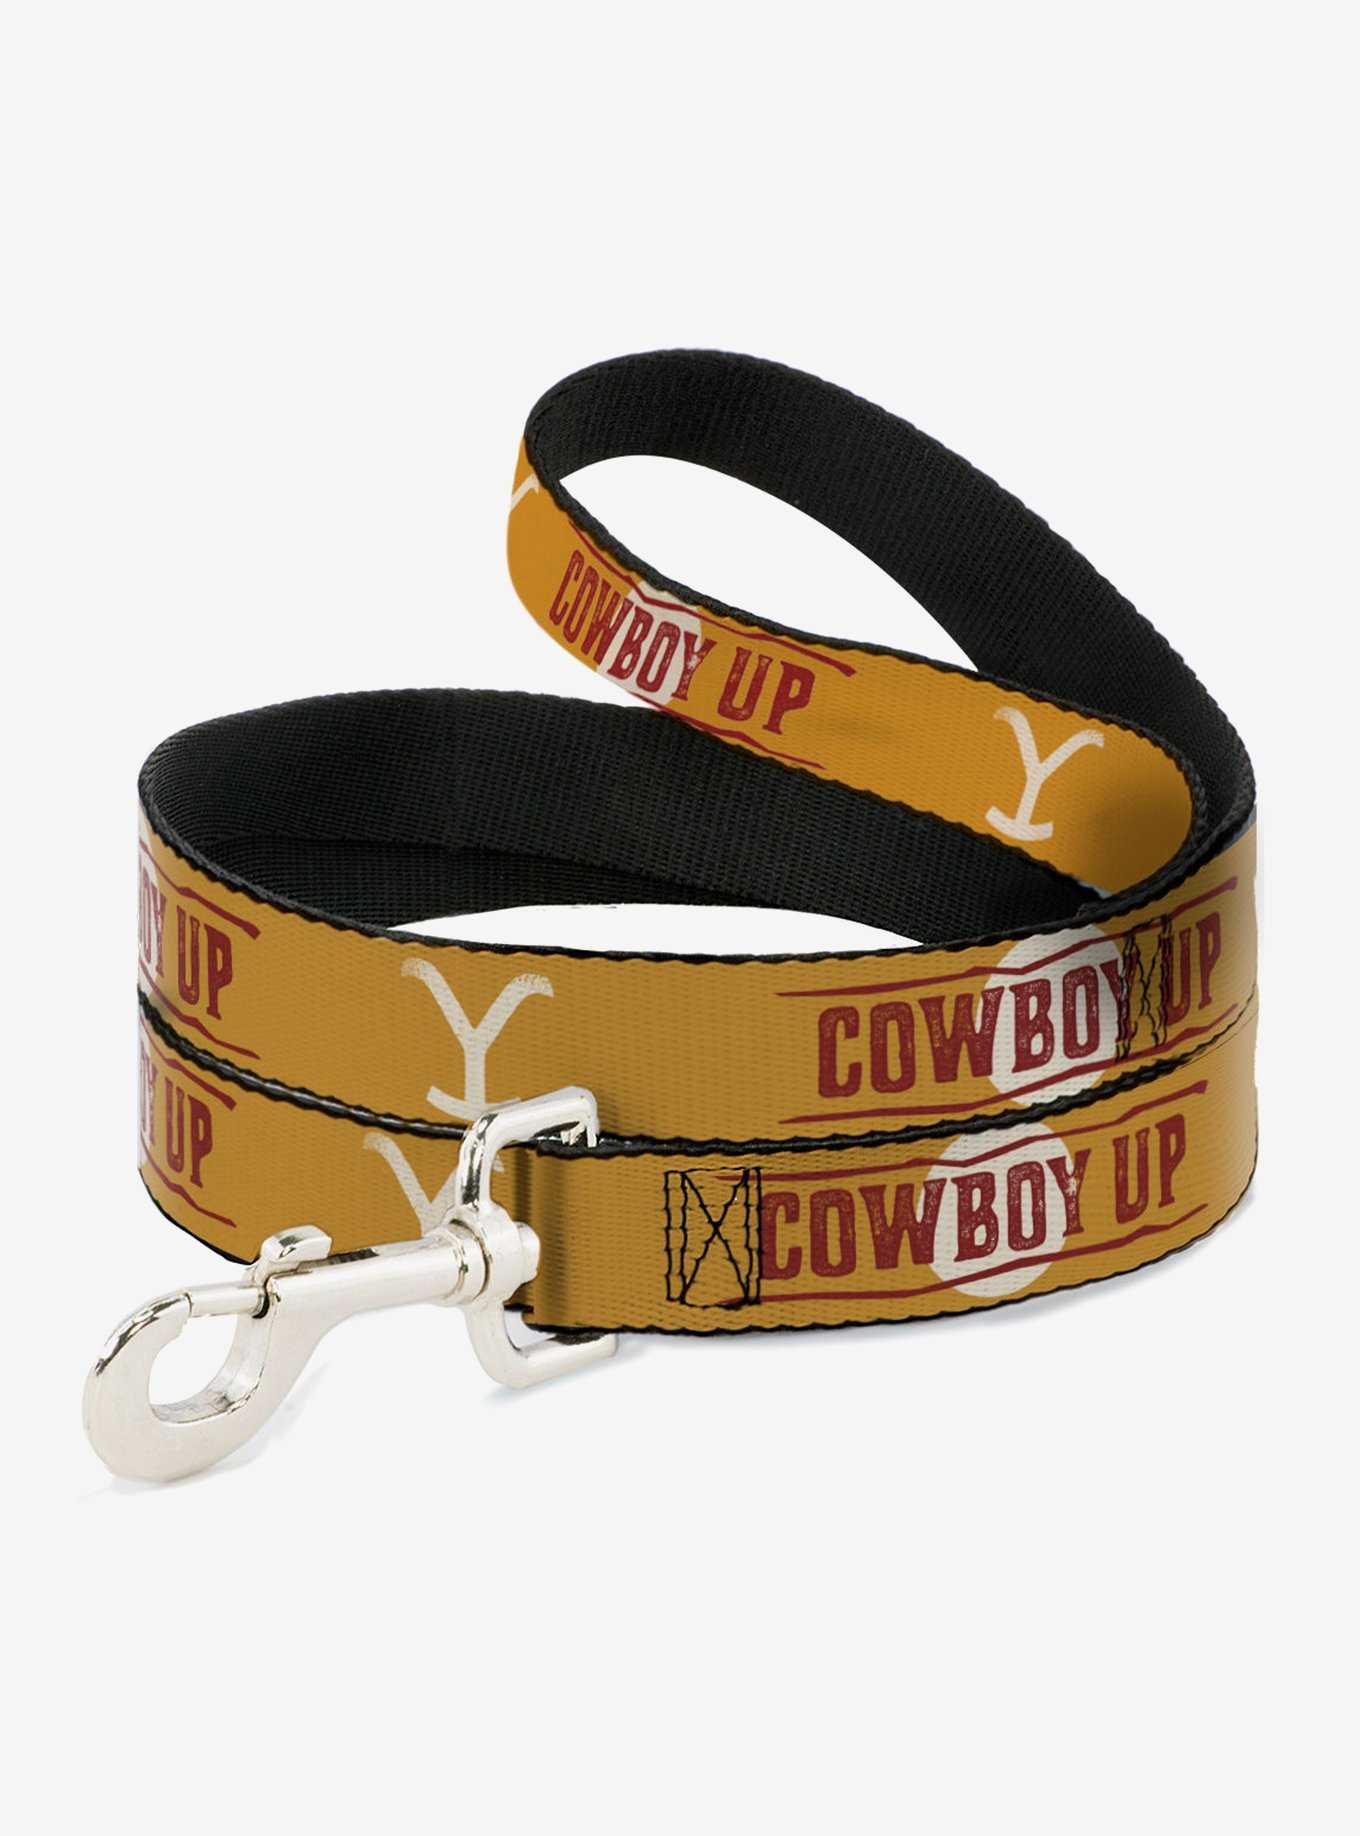 Yellowstone Y Logo Cowboy Up Text Dog Leash, , hi-res